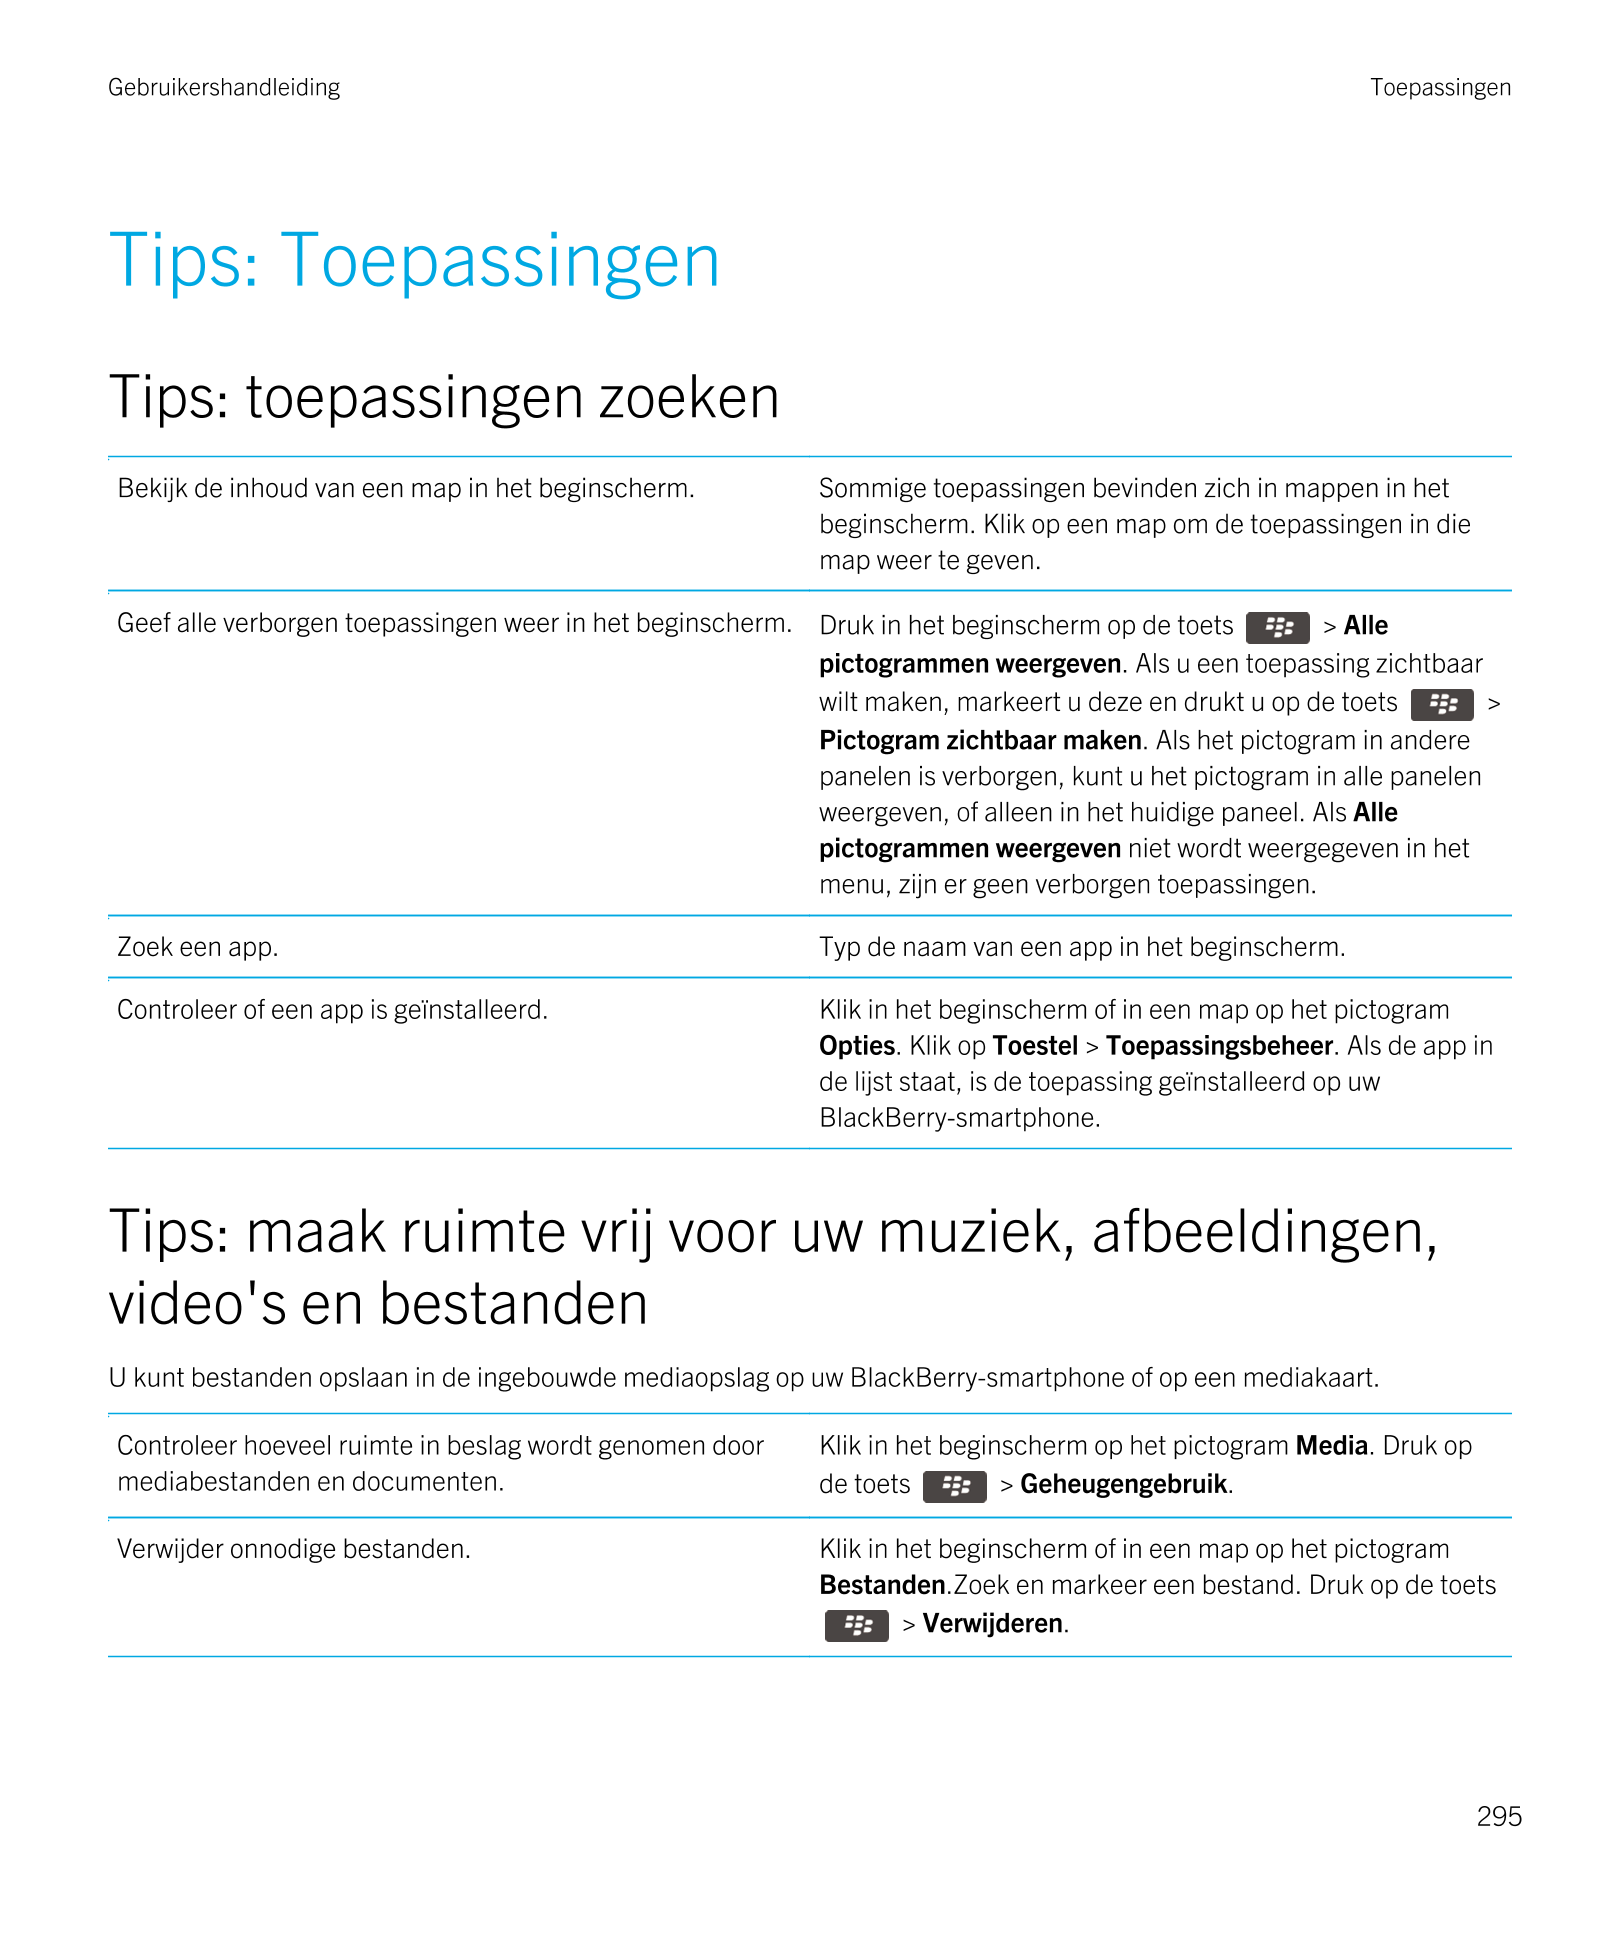 Gebruikershandleiding Toepassingen
Tips: Toepassingen
Tips: toepassingen zoeken
Bekijk de inhoud van een map in het beginscherm.